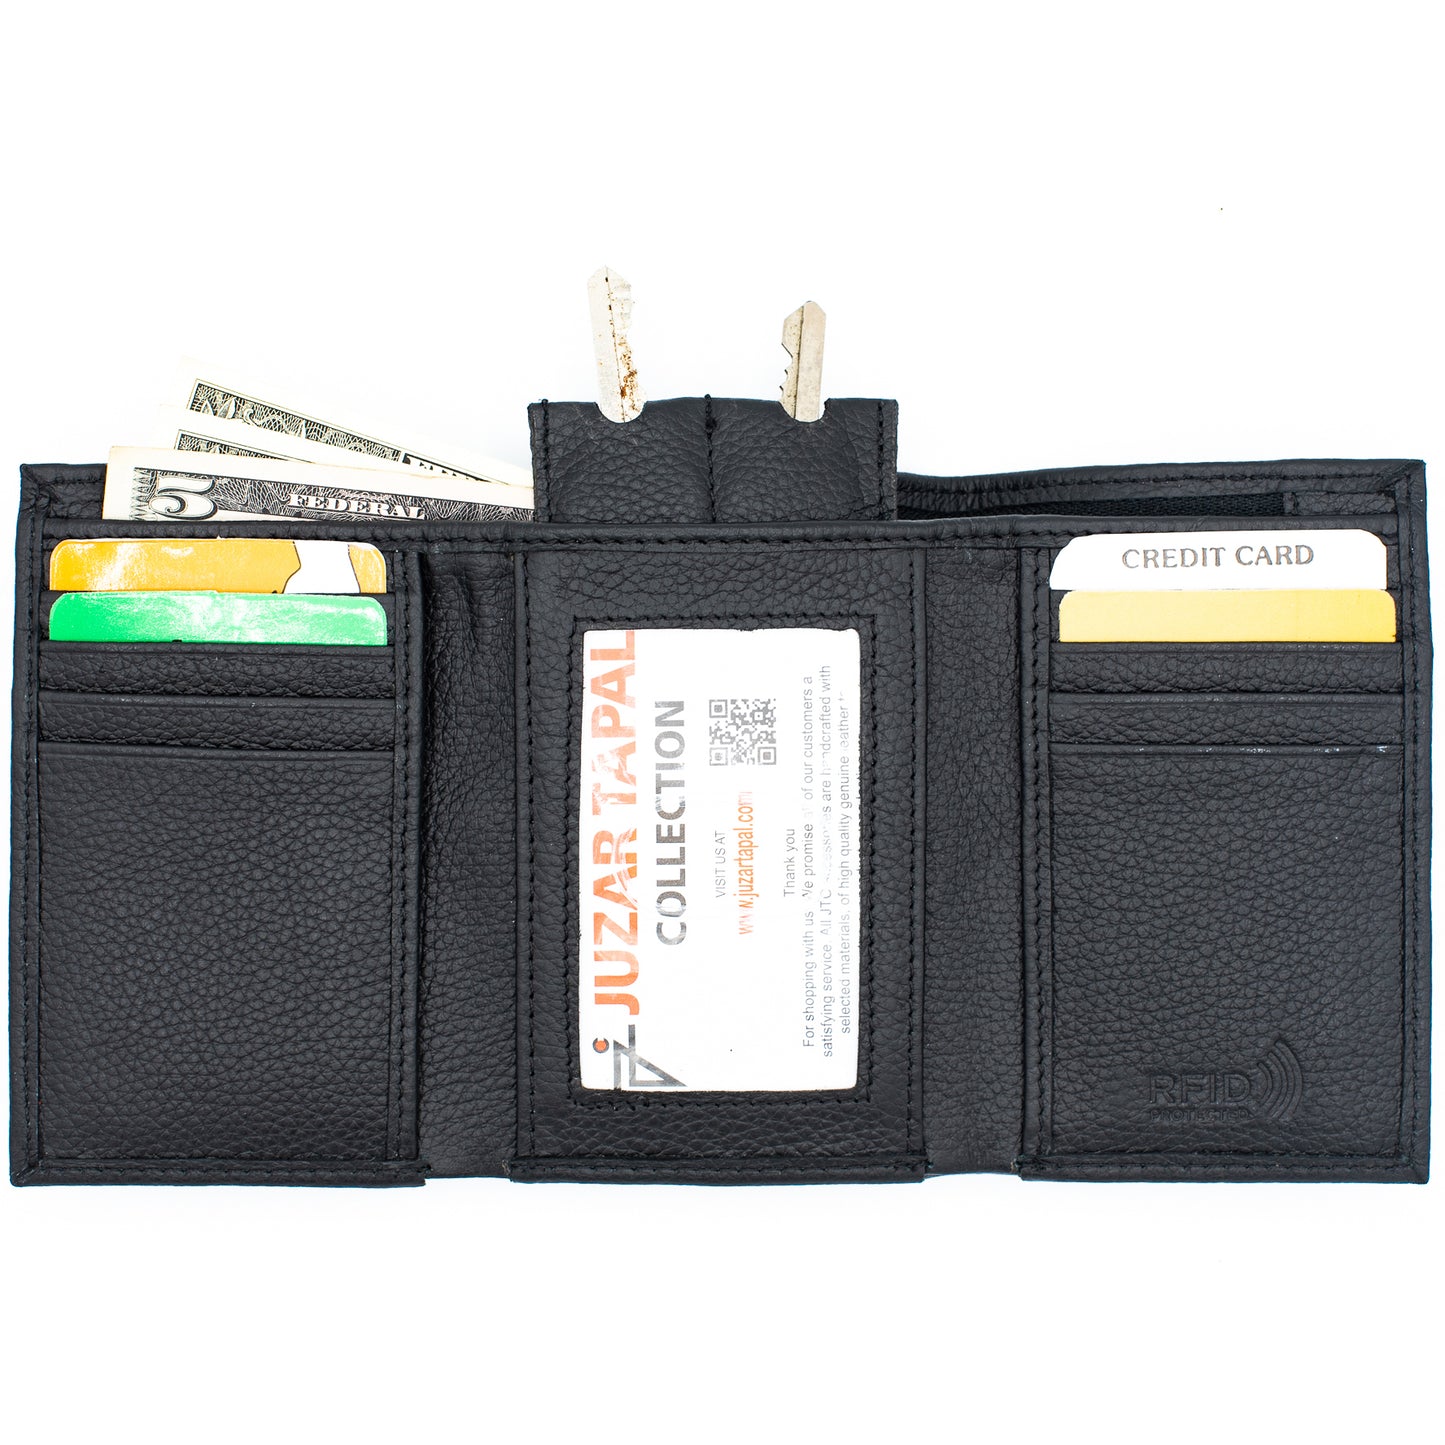 Trifold leather Wallet for Men RFID safe